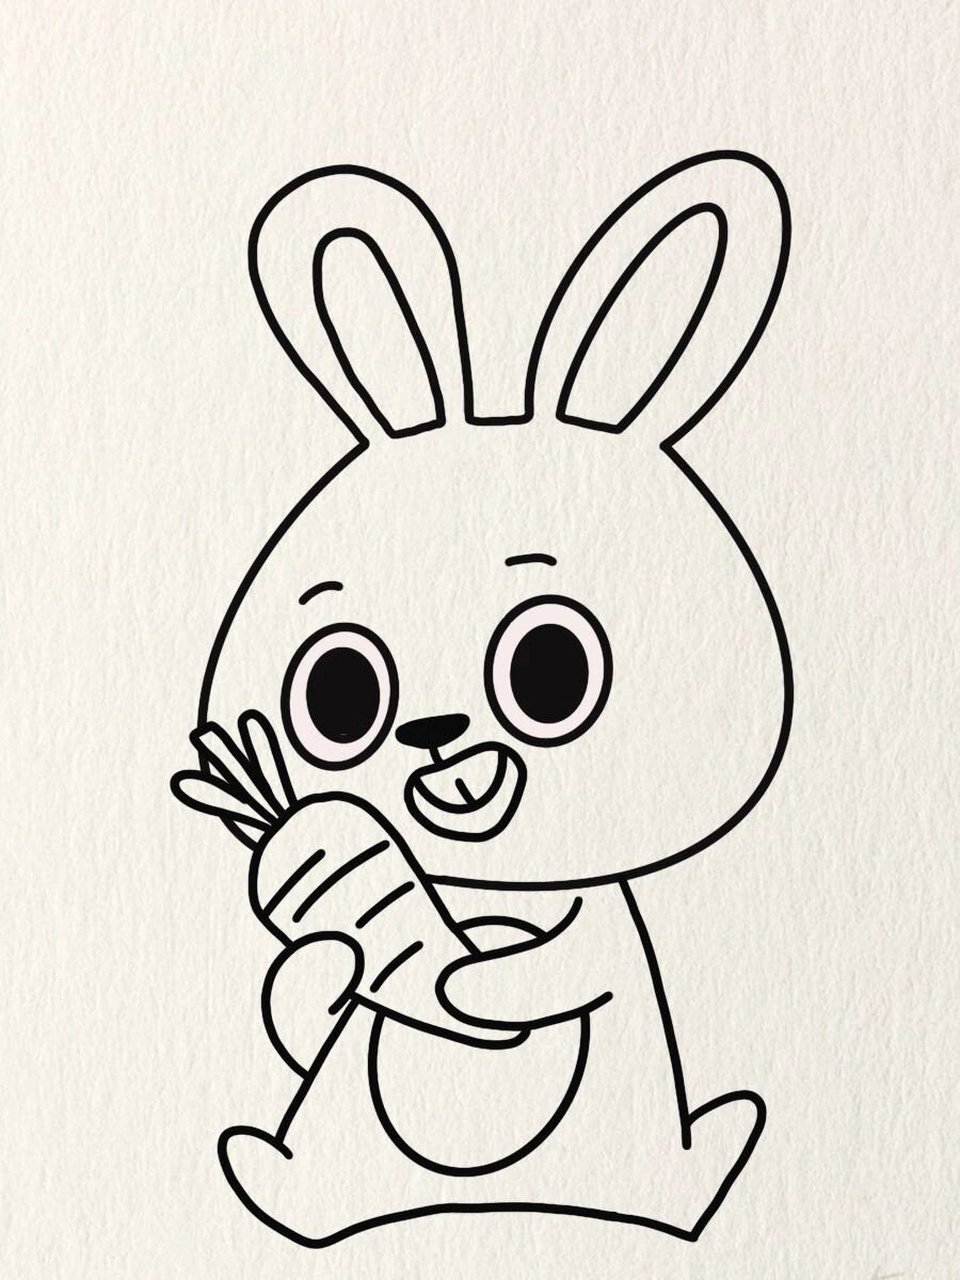 简笔画教程—抱胡萝卜的兔子 有许多小姐妹在问我,画画怎么学,怎么画,